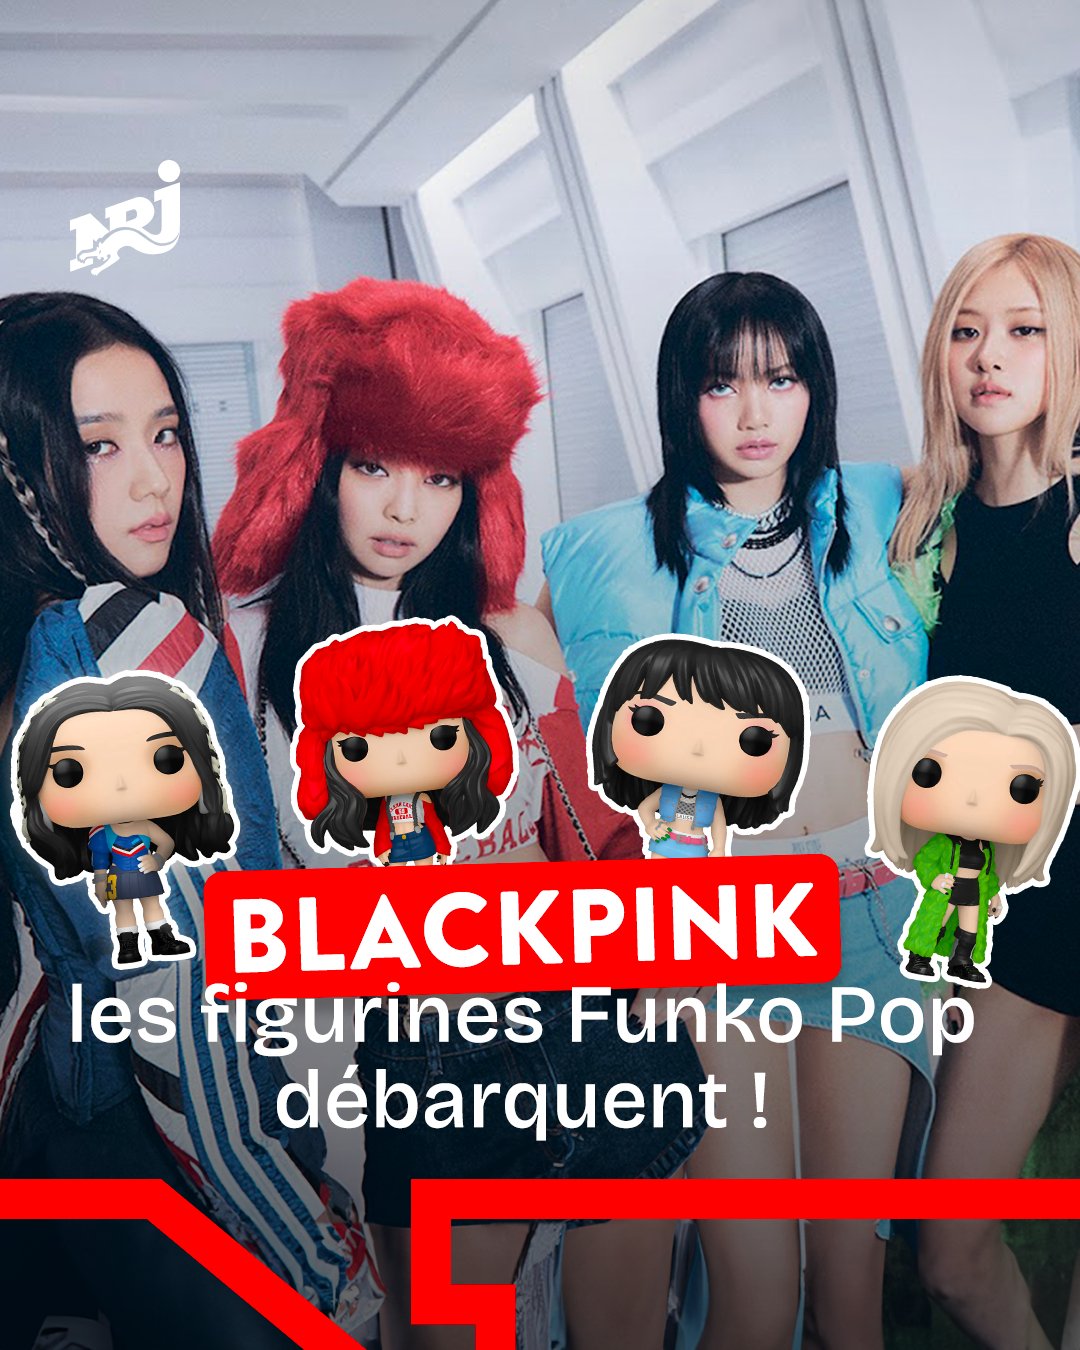 NRJ on X: Les @BLACKPINK ont sorti leurs figurines Funko Pop ! 😍 Alors,  laquelle ou LESQUELLES allez-vous acheter ? 👀  / X